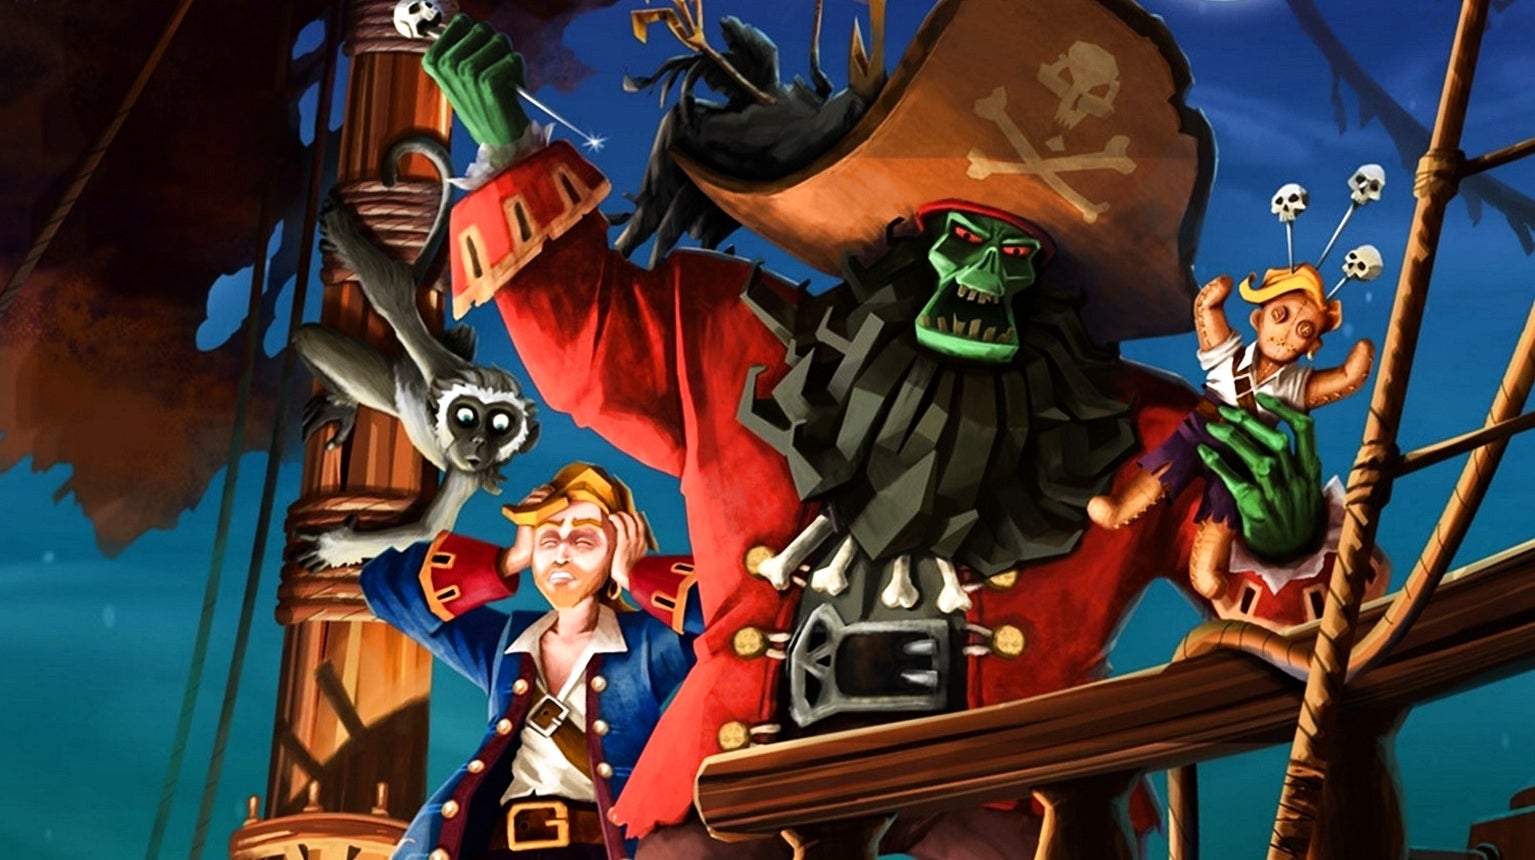 Bilder zu Die besten Piratenspiele 2022 - Update: Jetzt mit Weltraum- und Zombie-Piraten